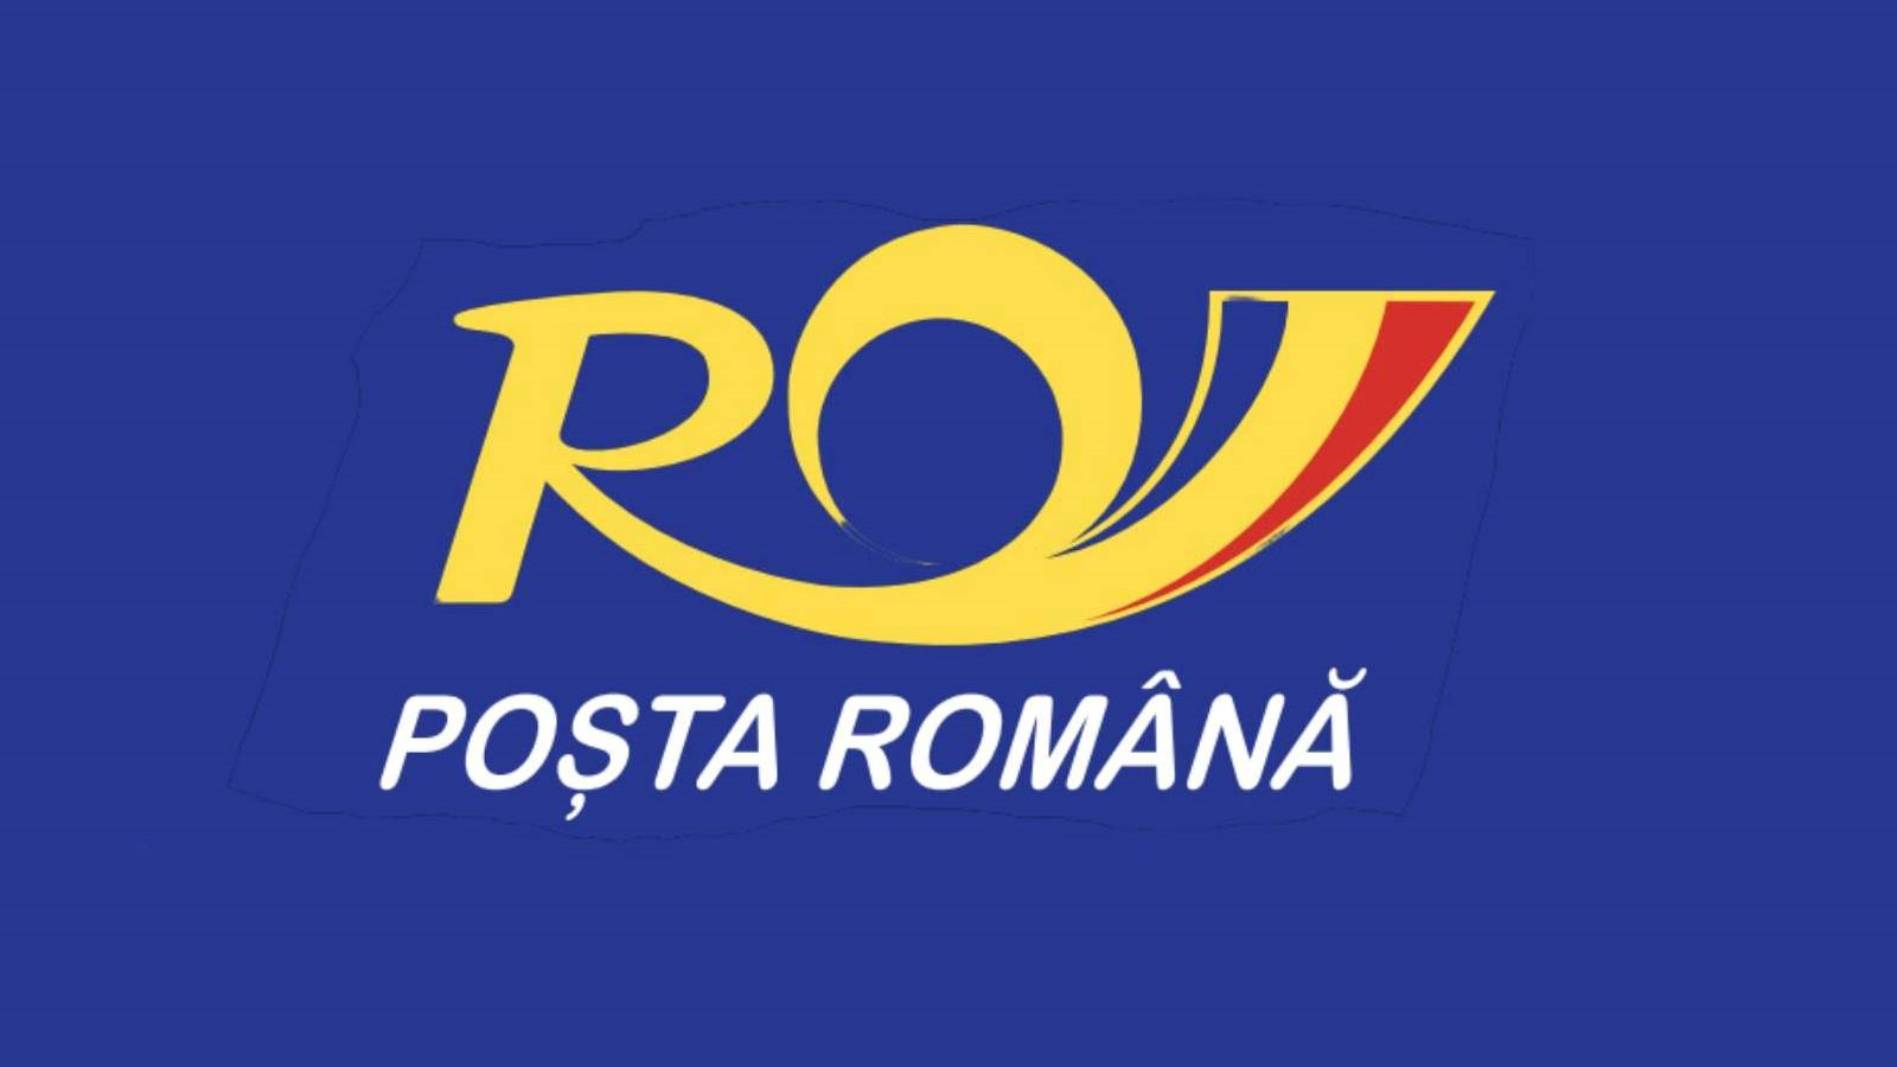 La poste roumaine ferme ses sous-unités dans toute la Roumanie, quand et pourquoi